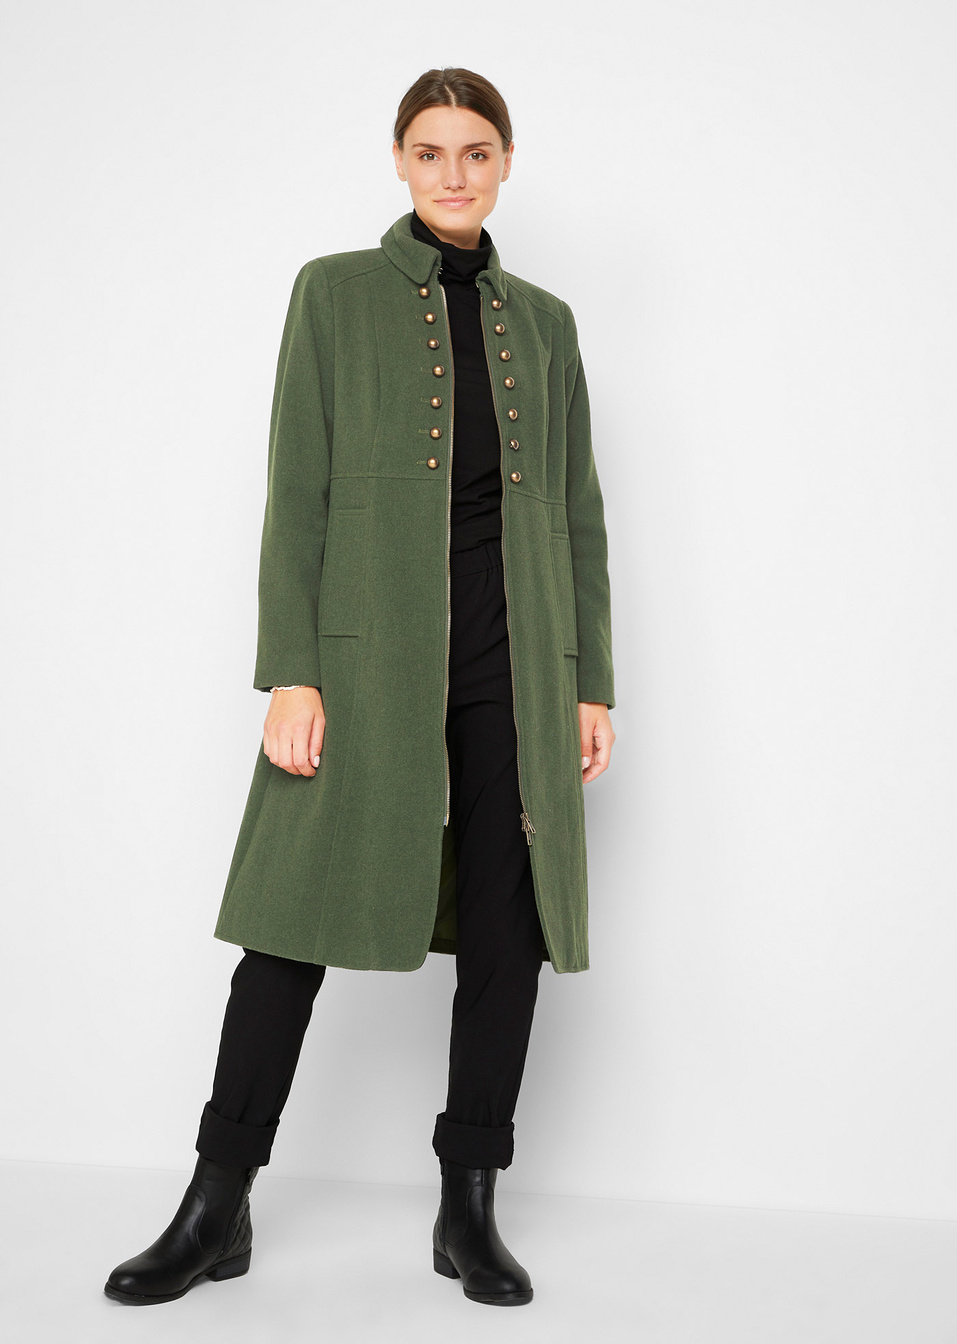 Παλτό σε μιλιτέρ στιλ-bpc bonprix collection